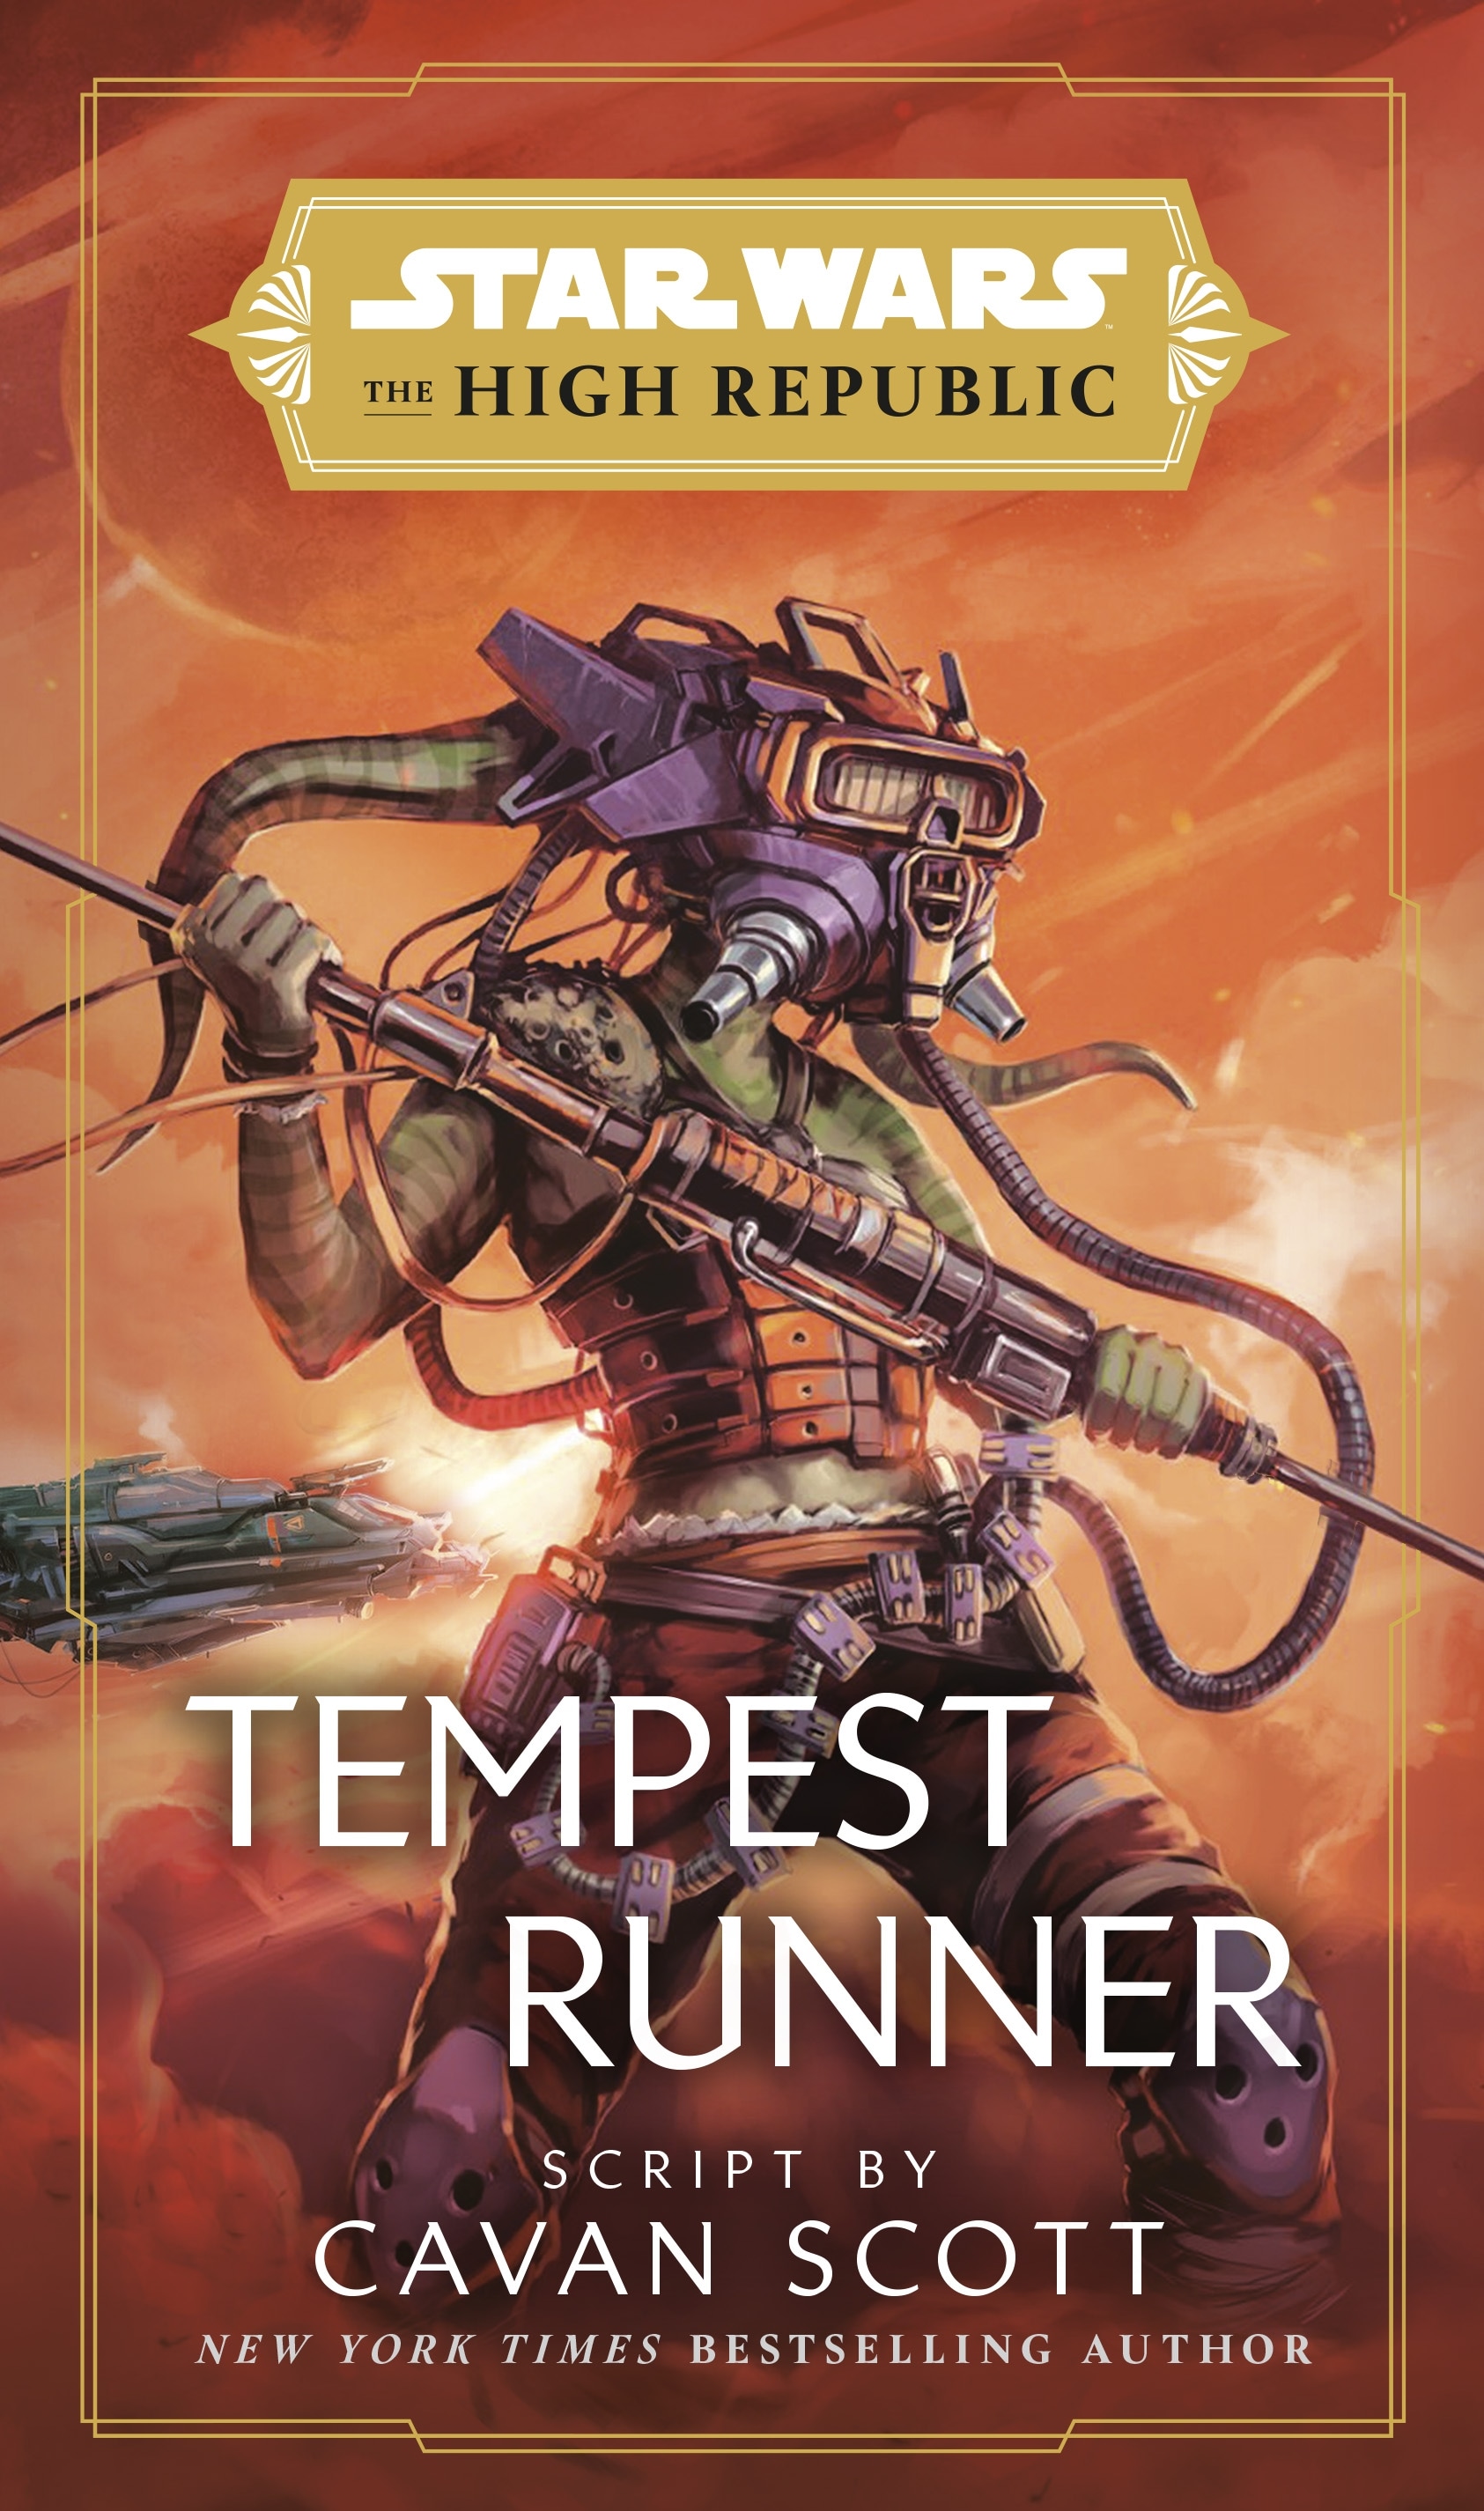 Book “Star Wars: Tempest Runner” by Cavan Scott — March 1, 2022